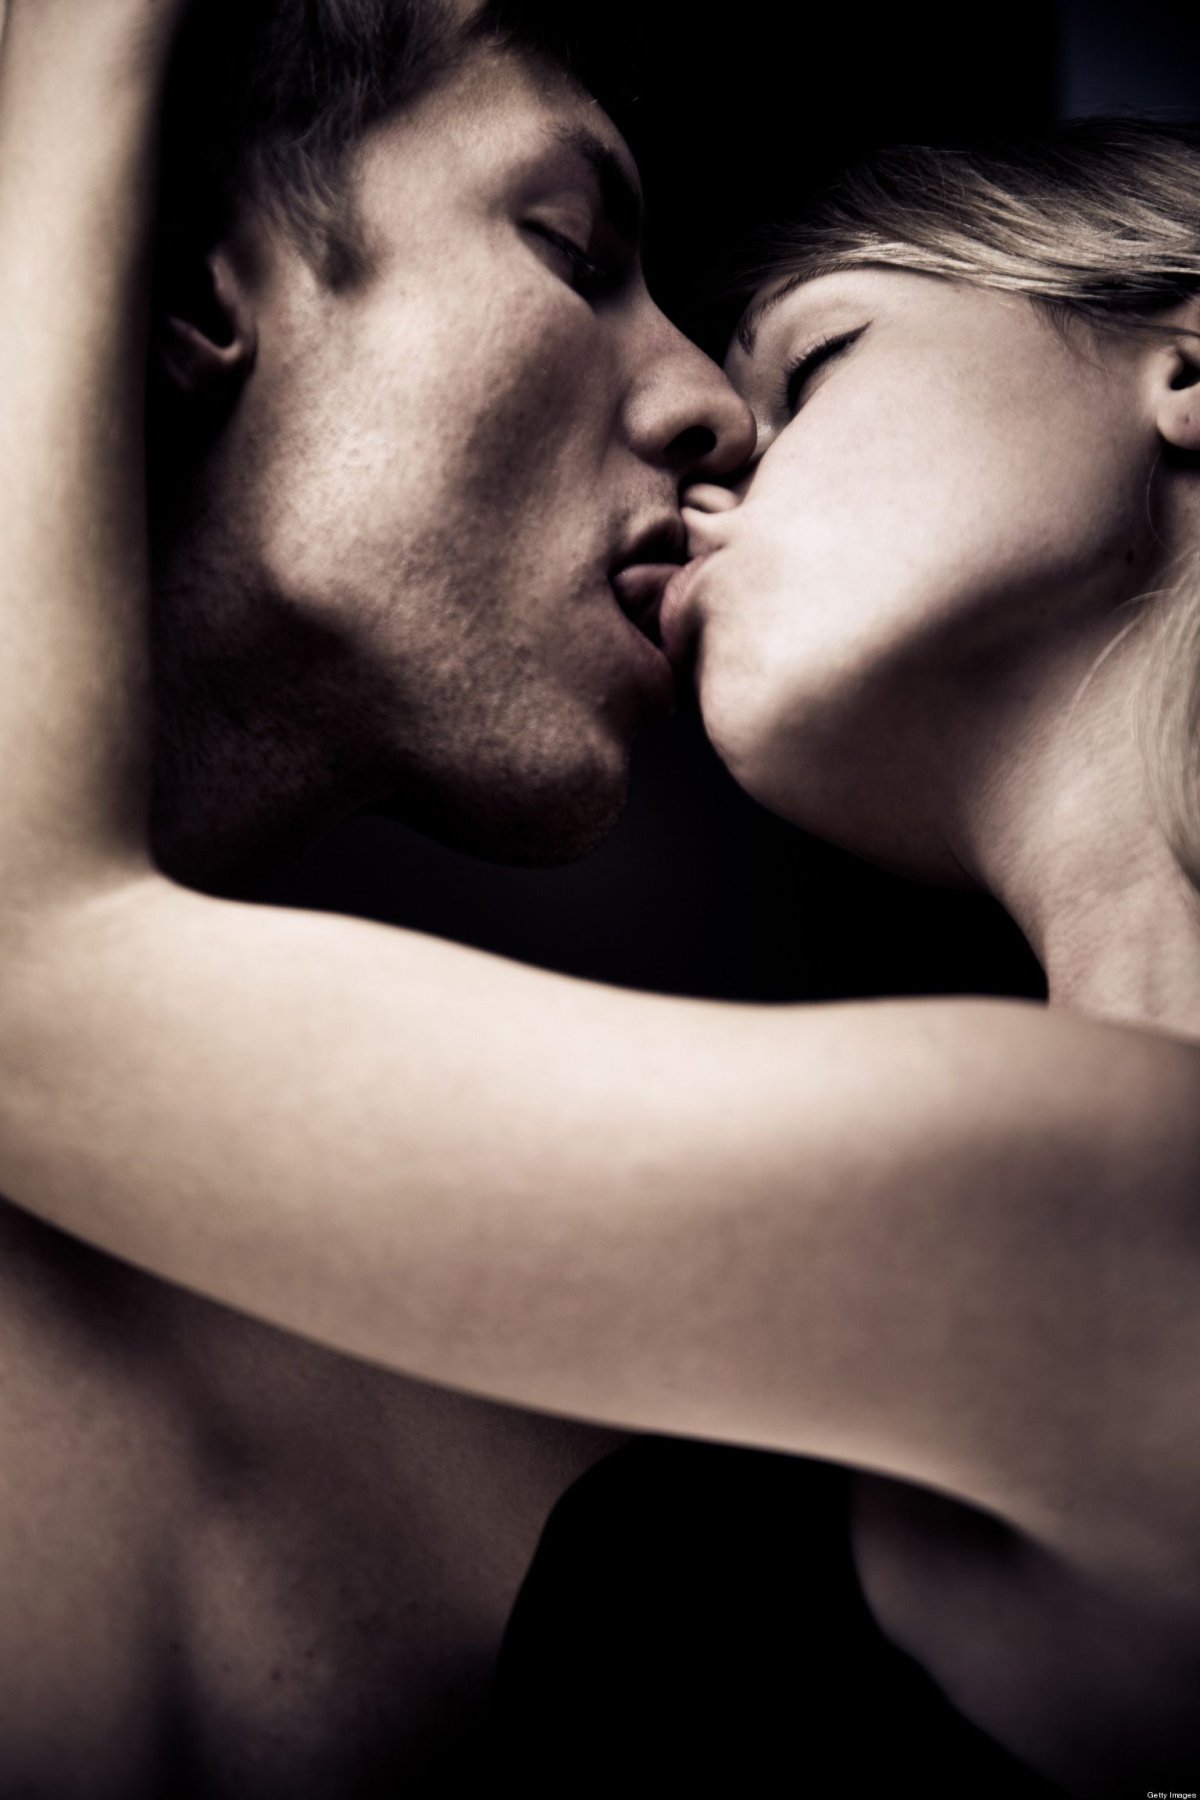 Страсть поцелуй пара: изображения без лицензионных платежей